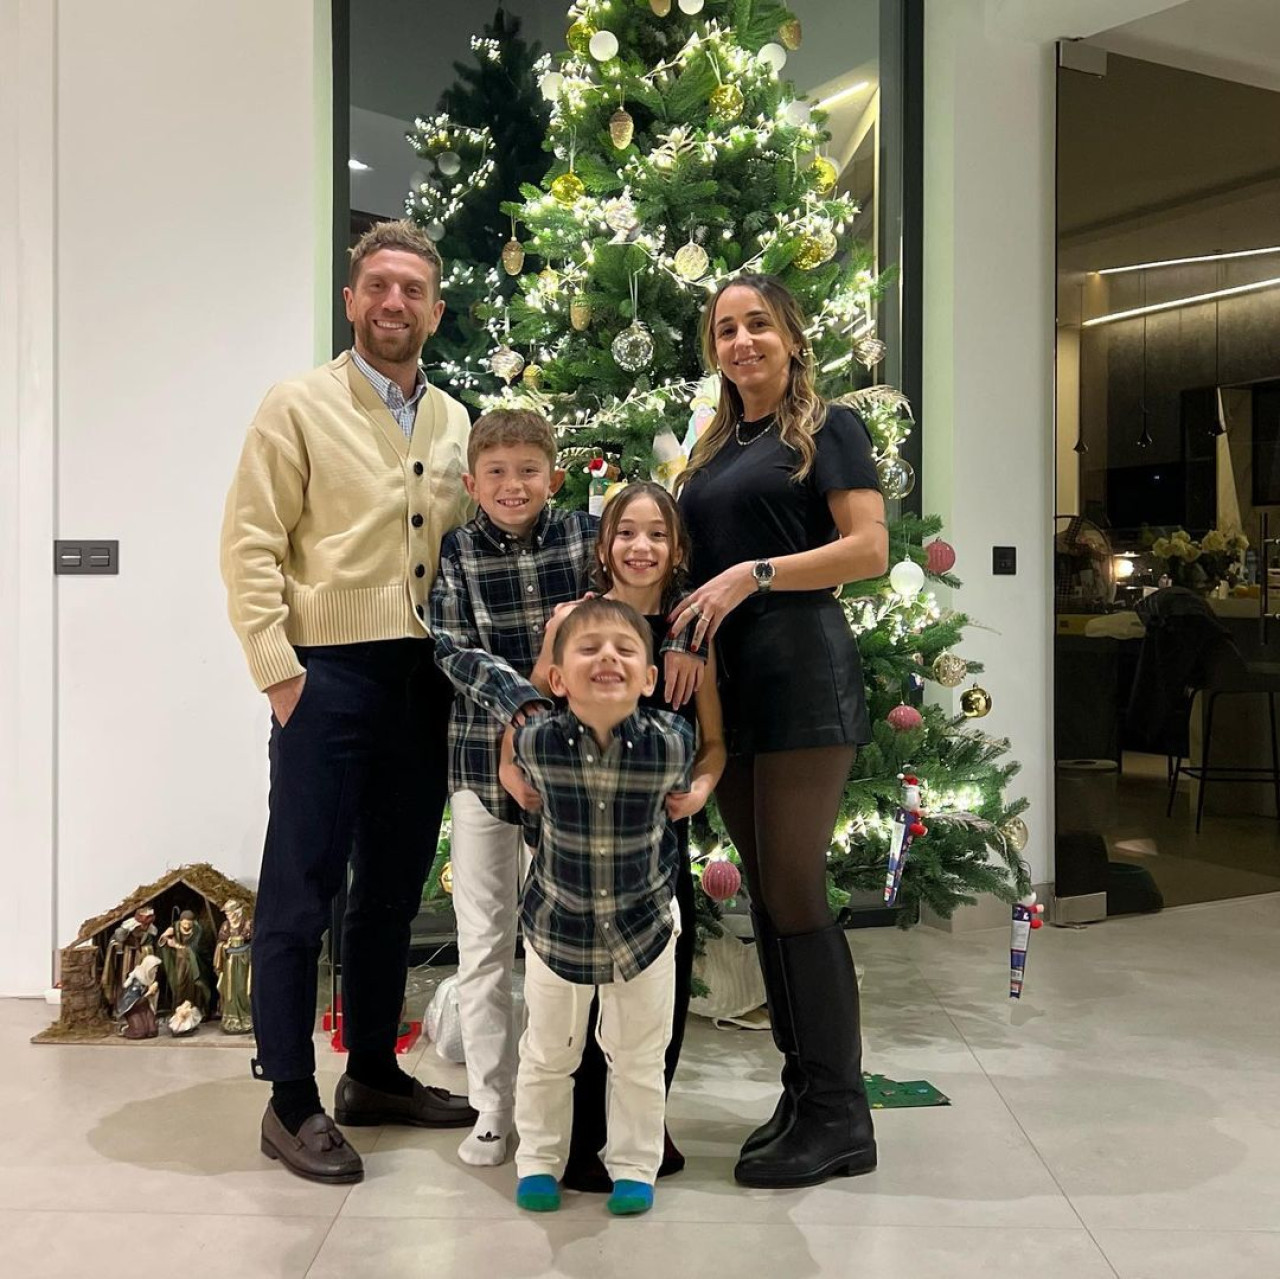 Papu Gómez y su familia en navidad. Foto: Instagram.